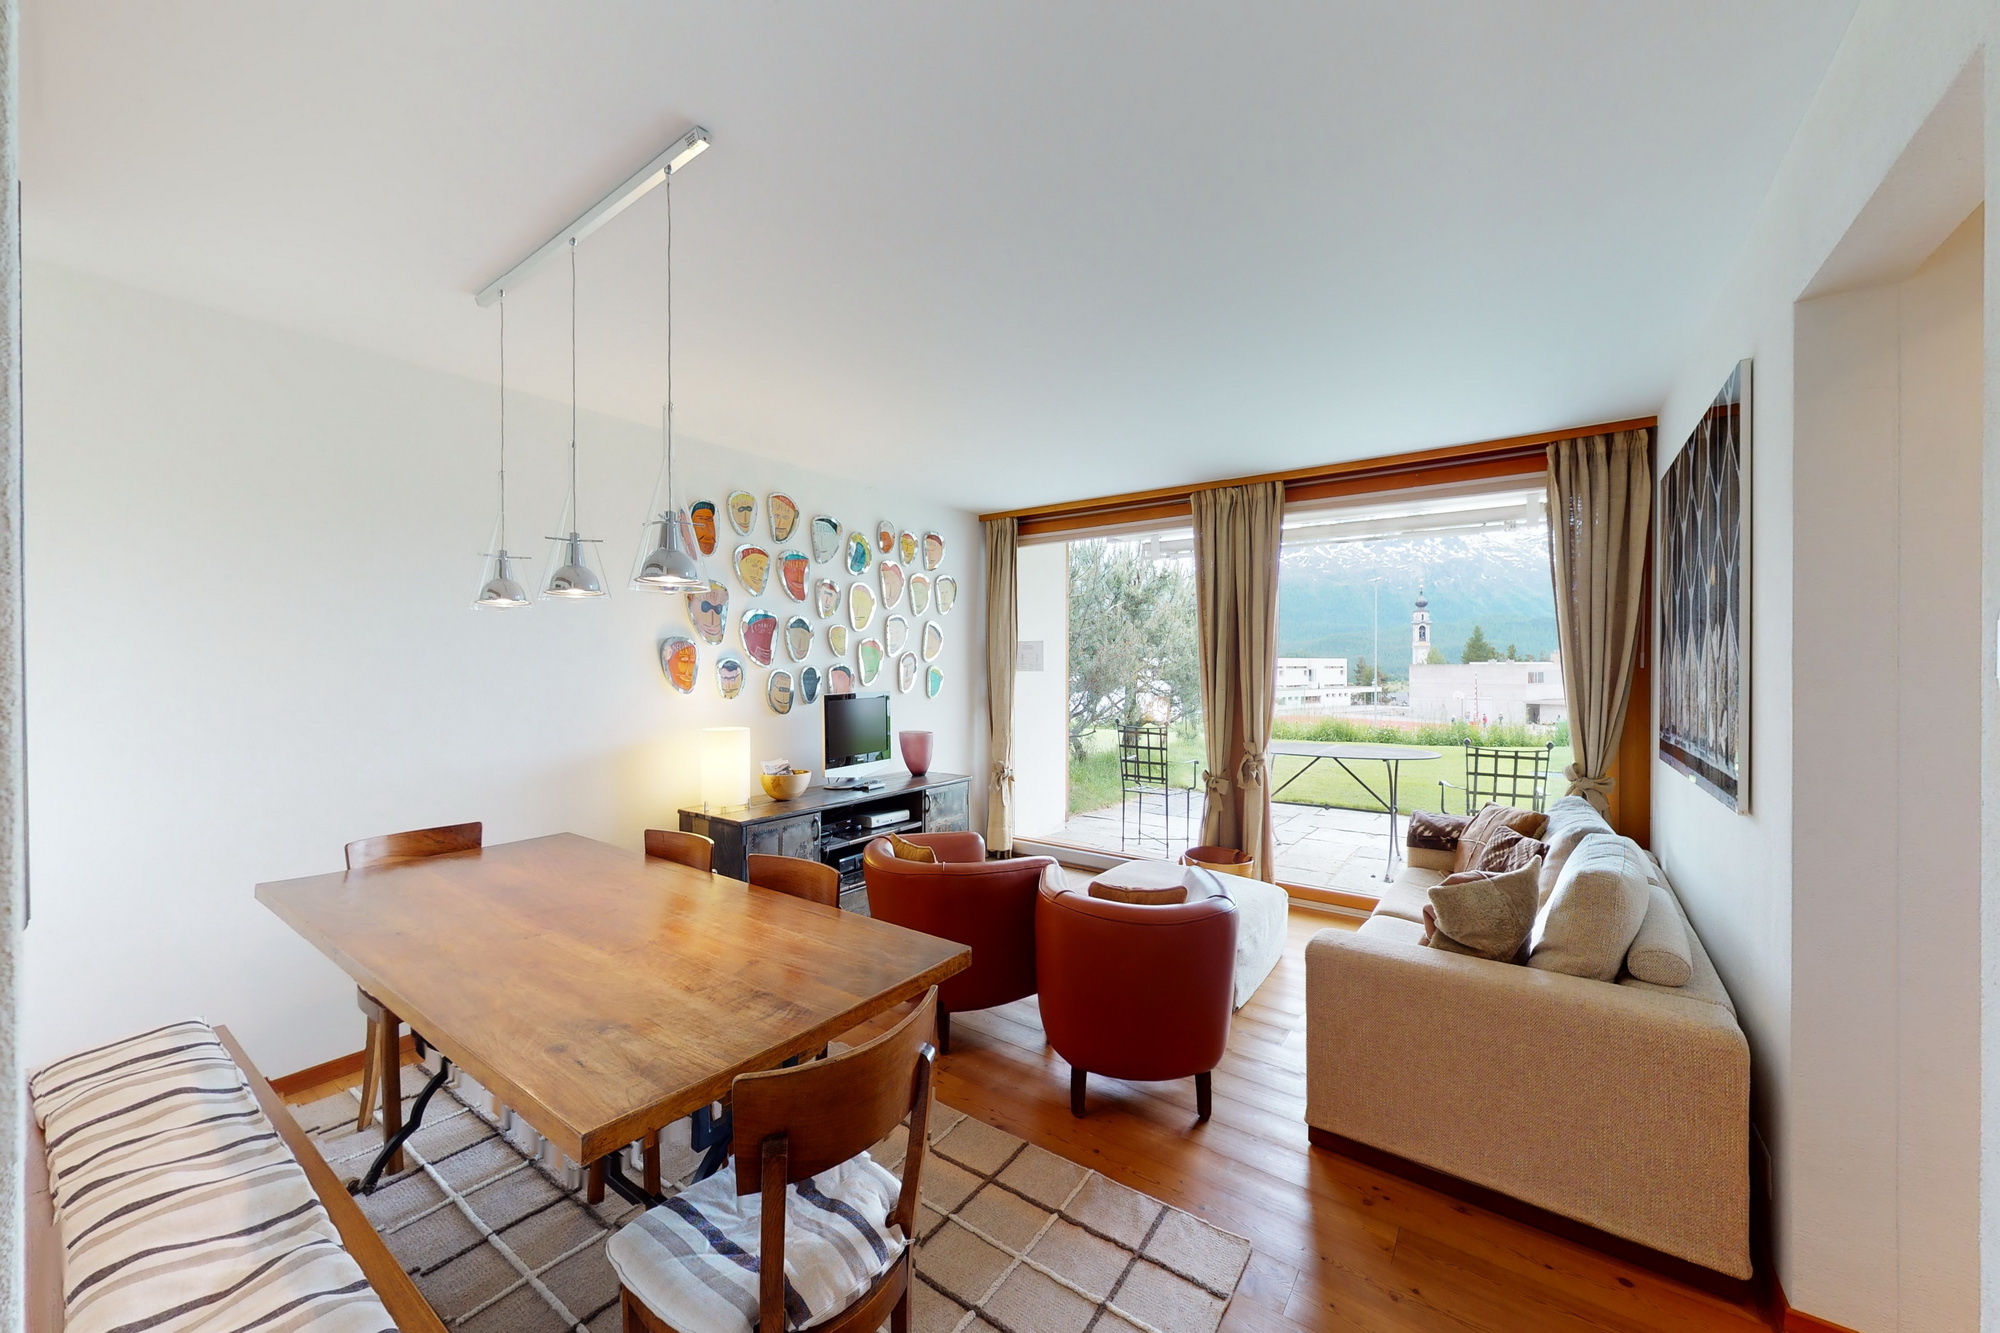 Apartment Sur Puoz 3 - SOMMER Bergbahnen inklusive Ferienwohnung in der Schweiz